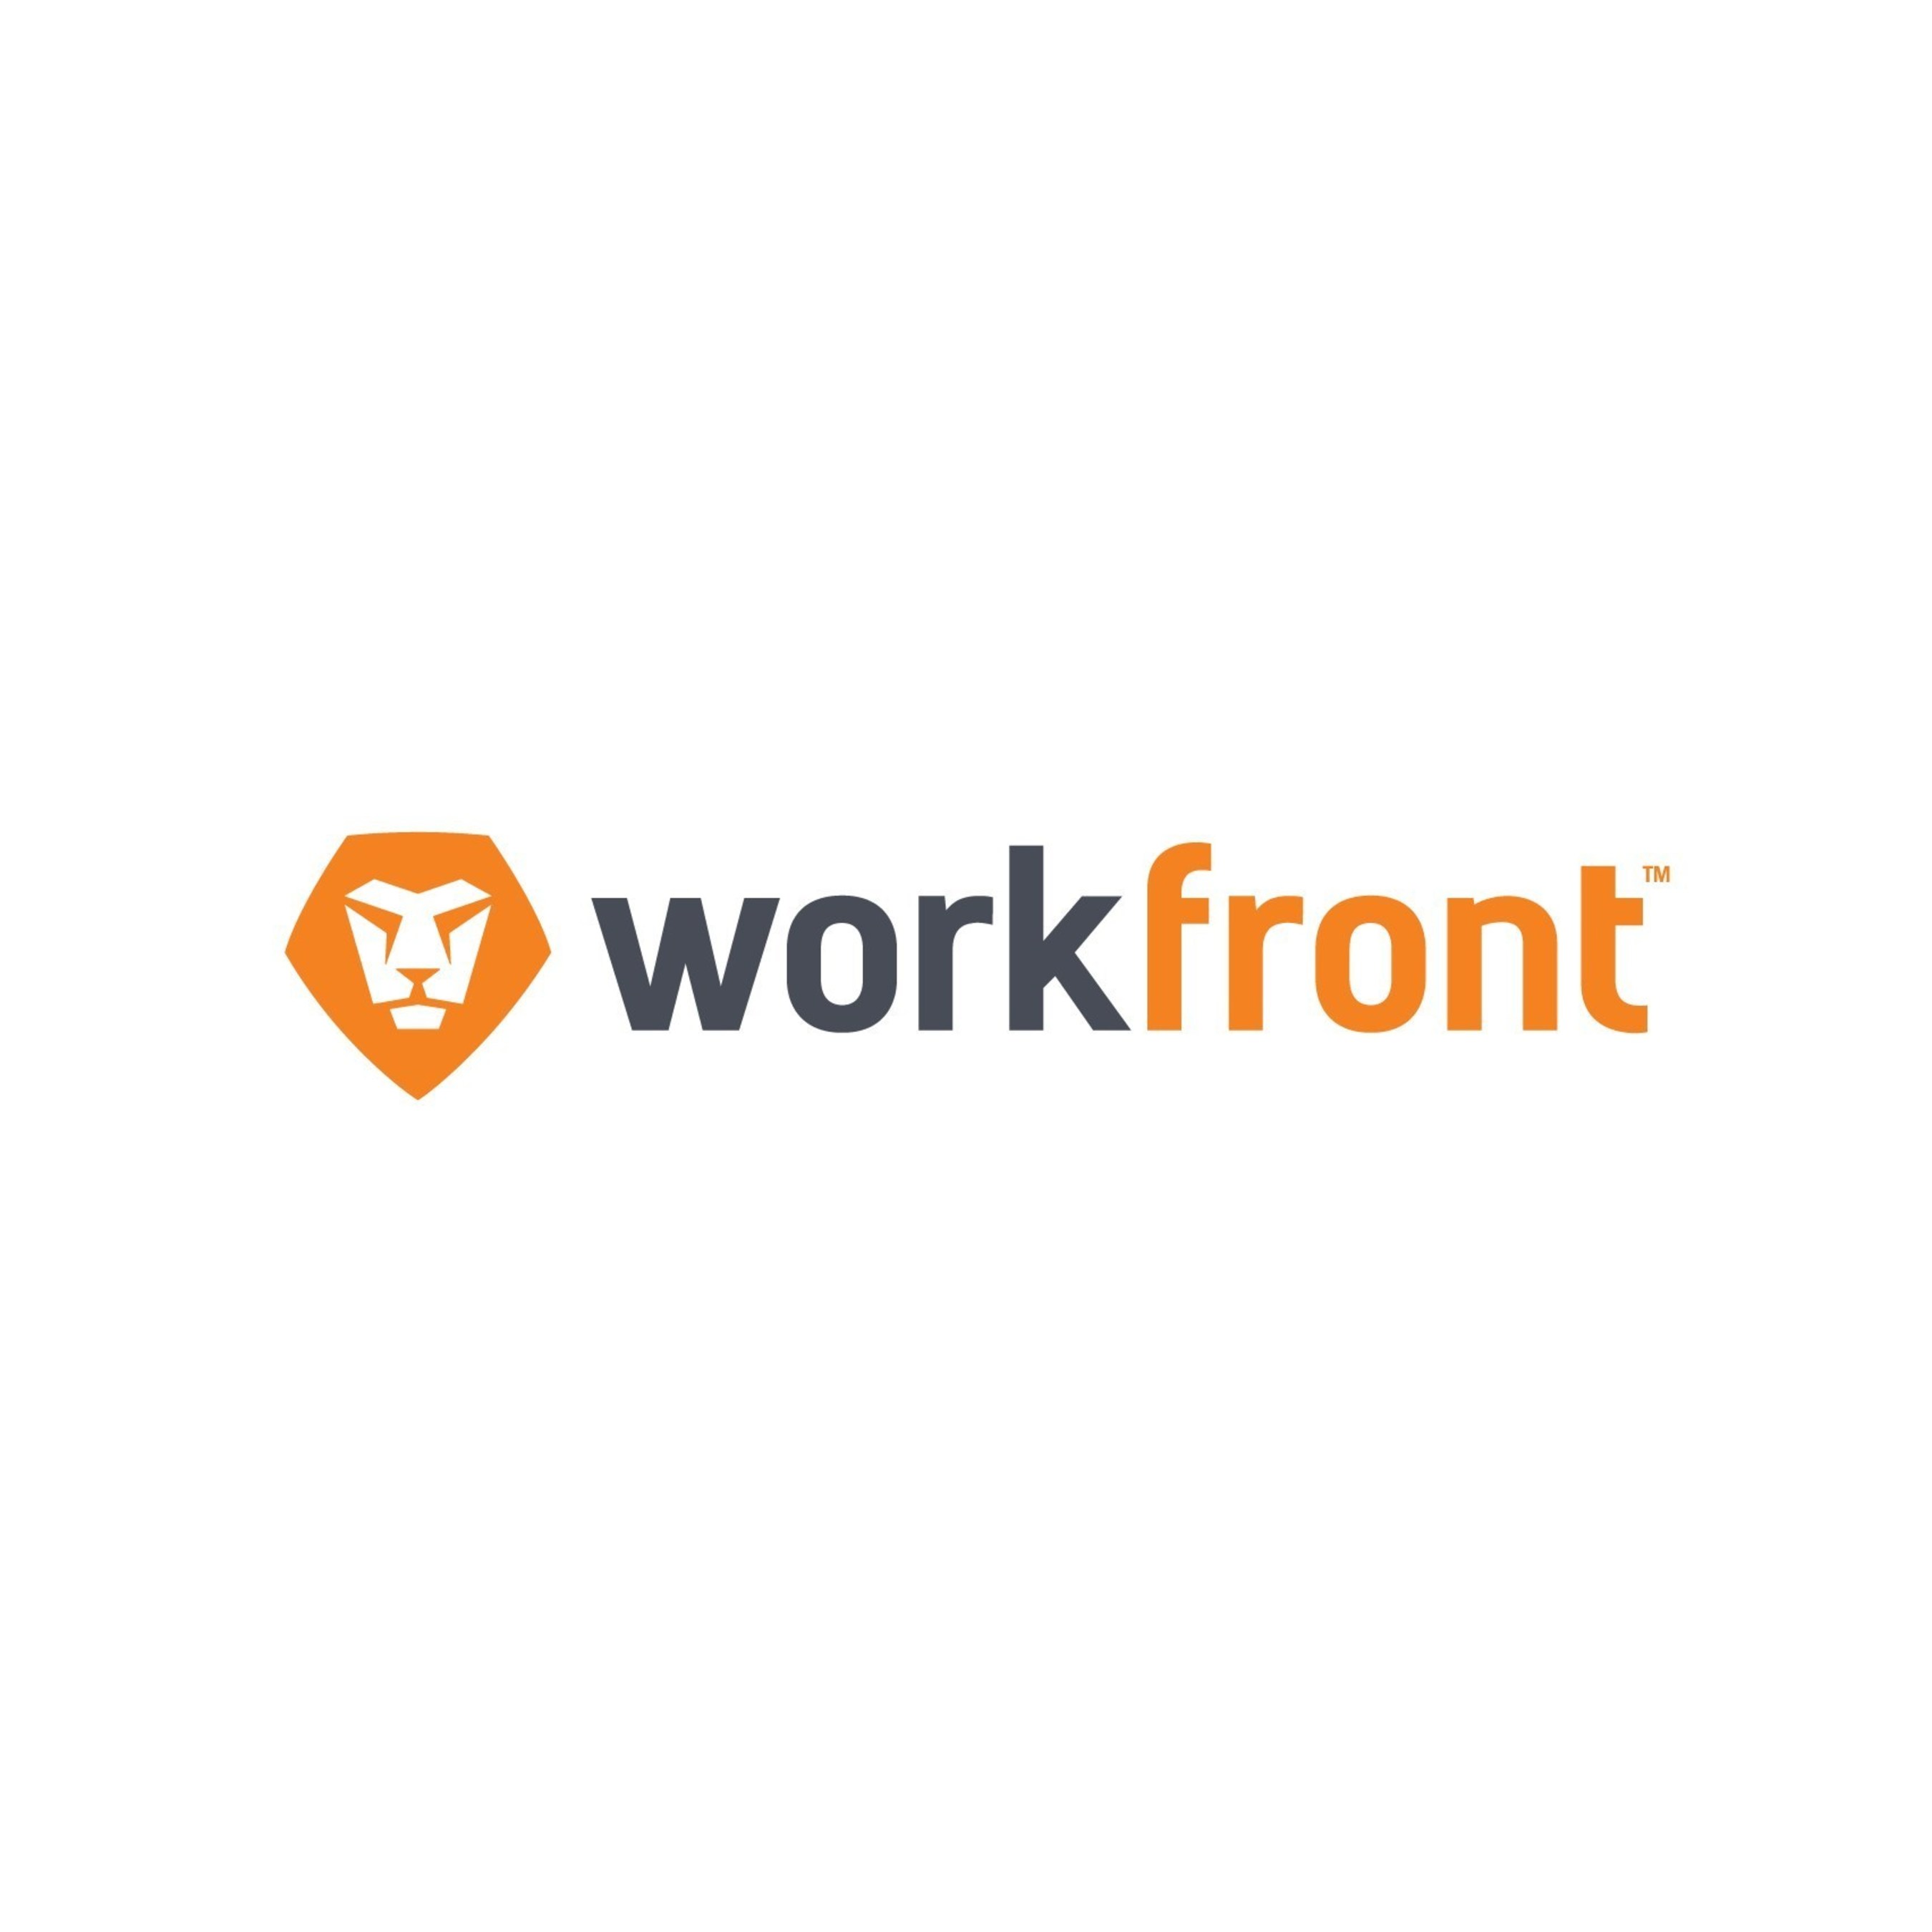 Workfront logo (PRNewsFoto/Workfront Inc.)